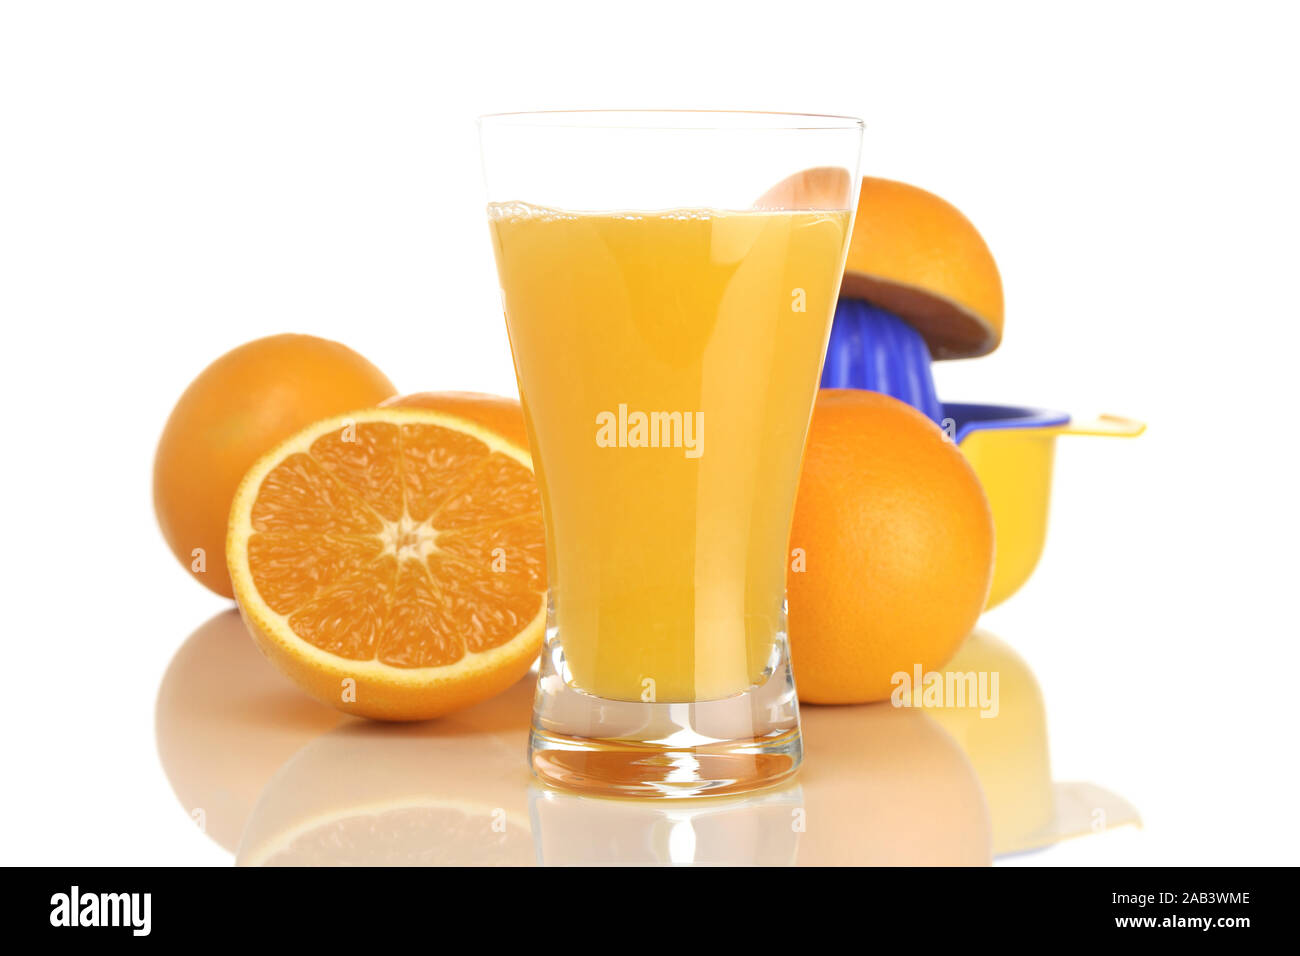 Glas mit Orangensaft, Orangen und Entsafter |Vetro con succo di arancia, succo di arance e spremiagrumi| Foto Stock